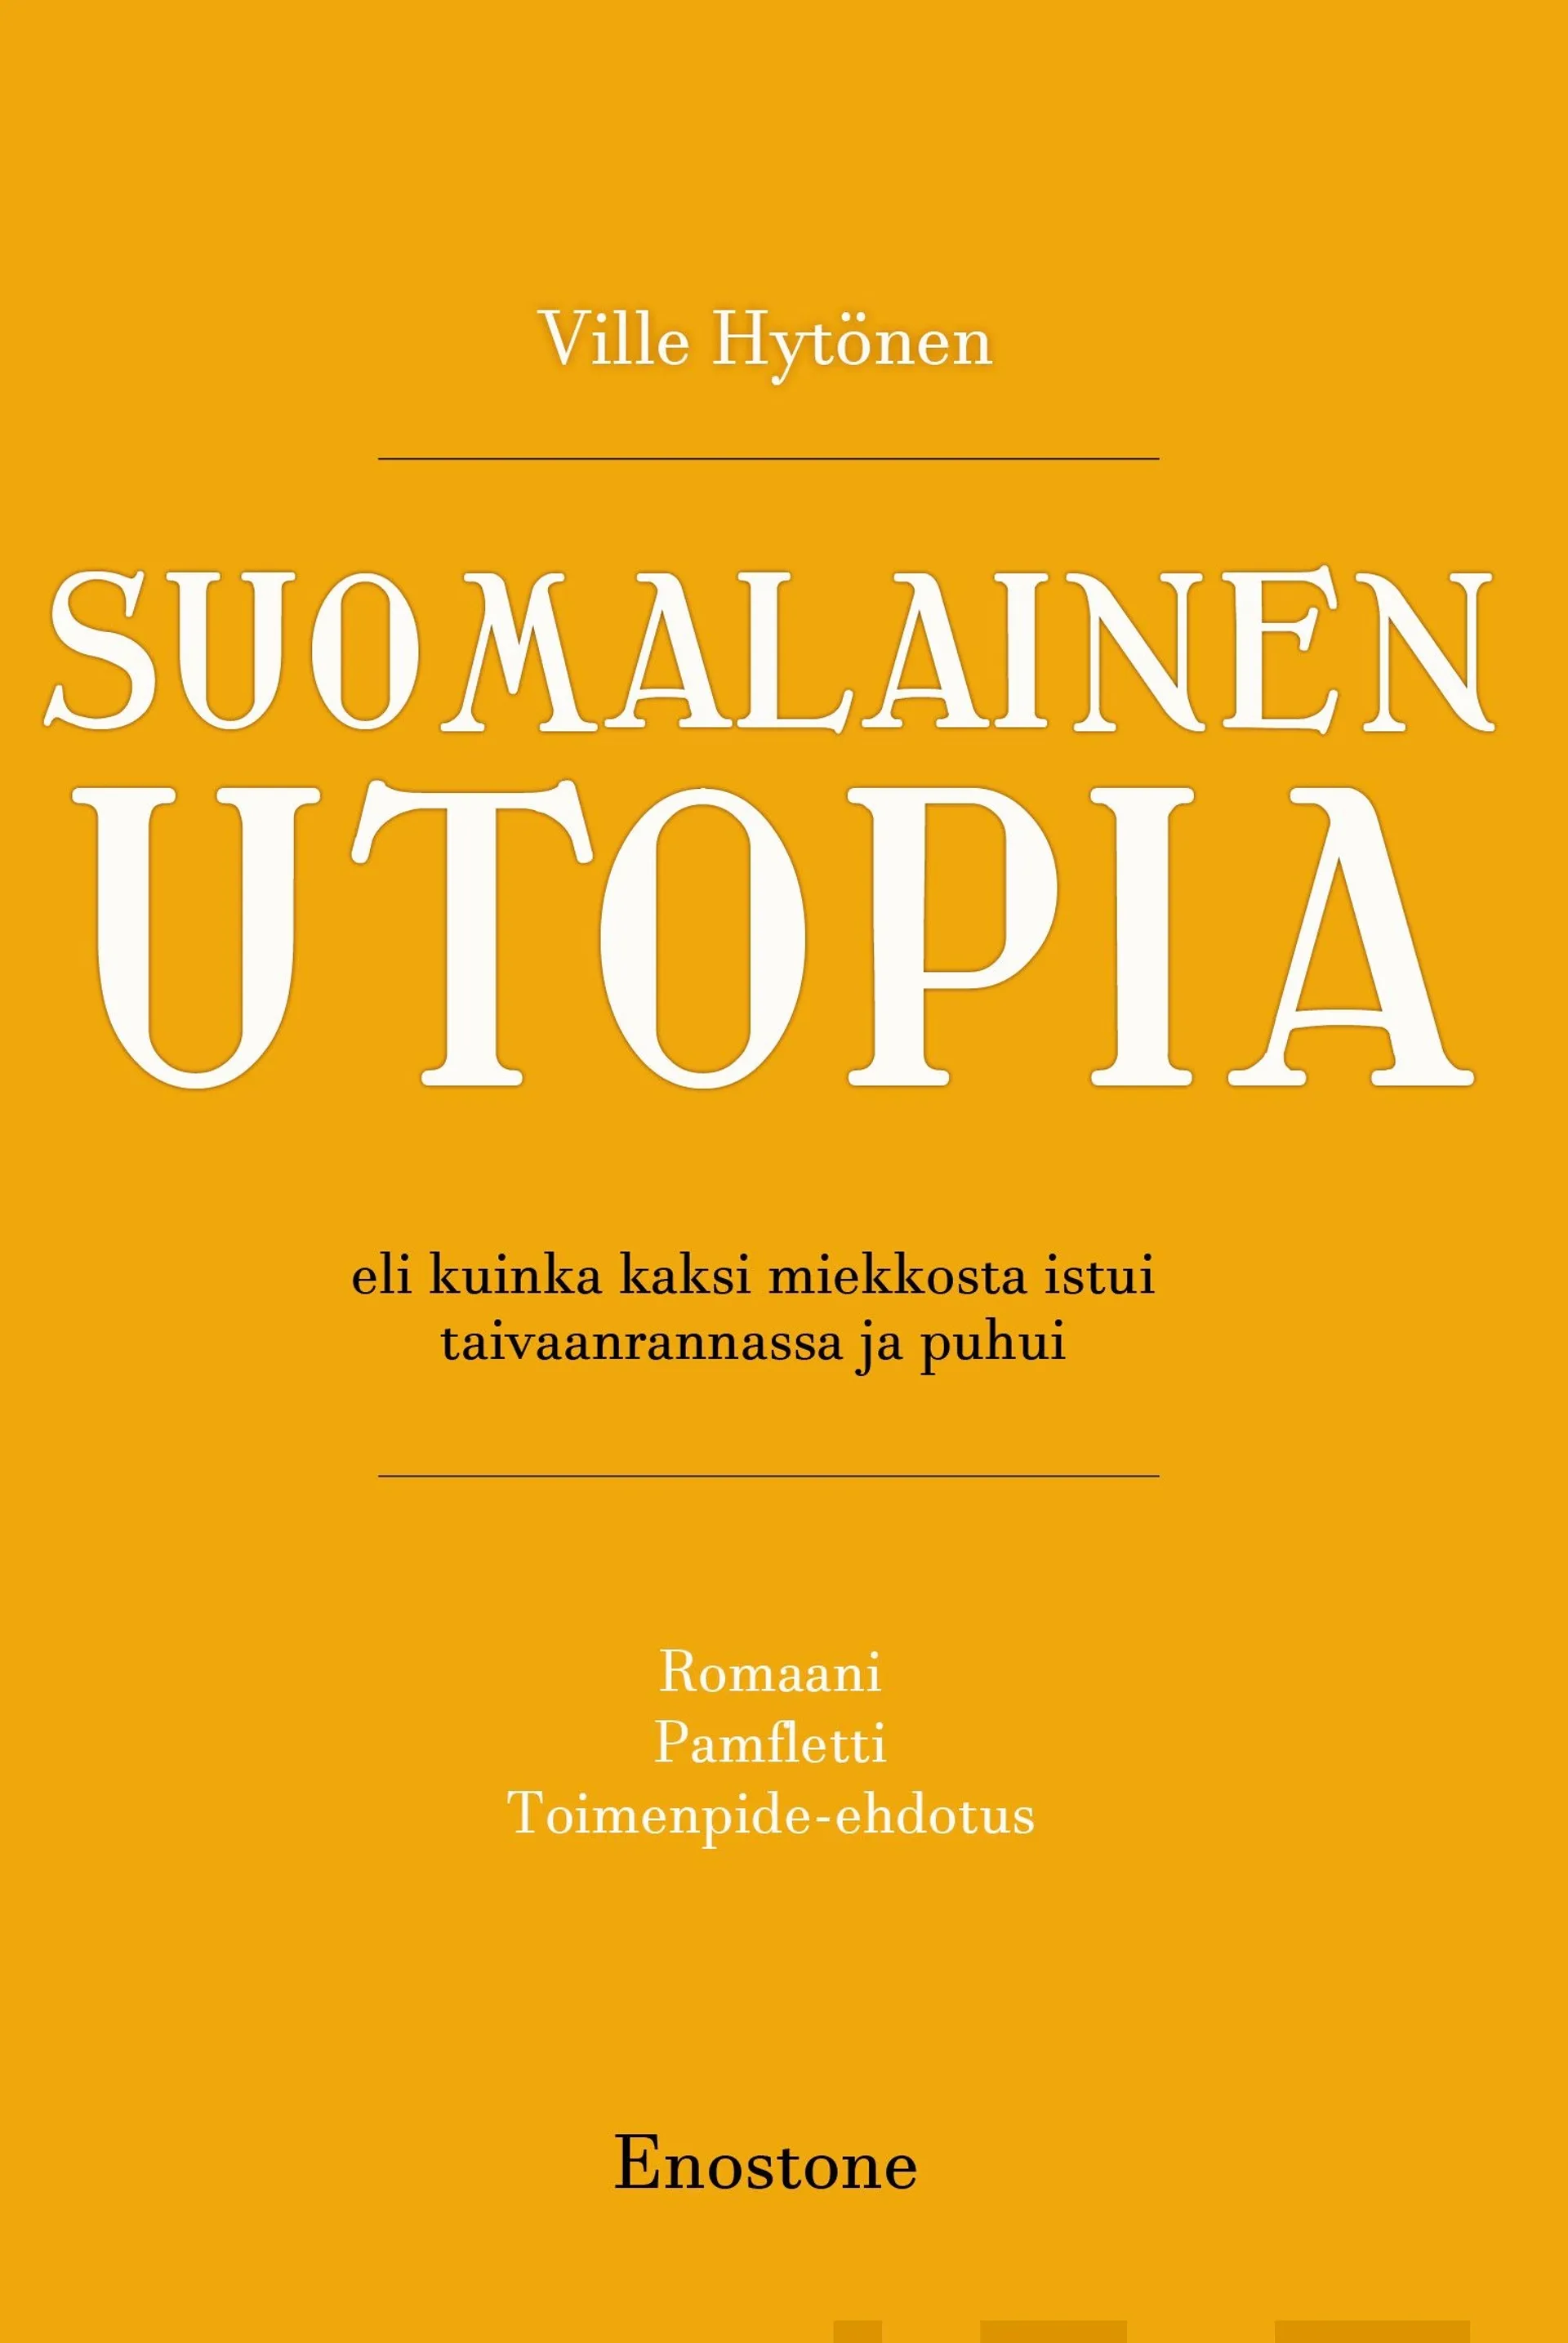 Hytönen, Suomalainen utopia